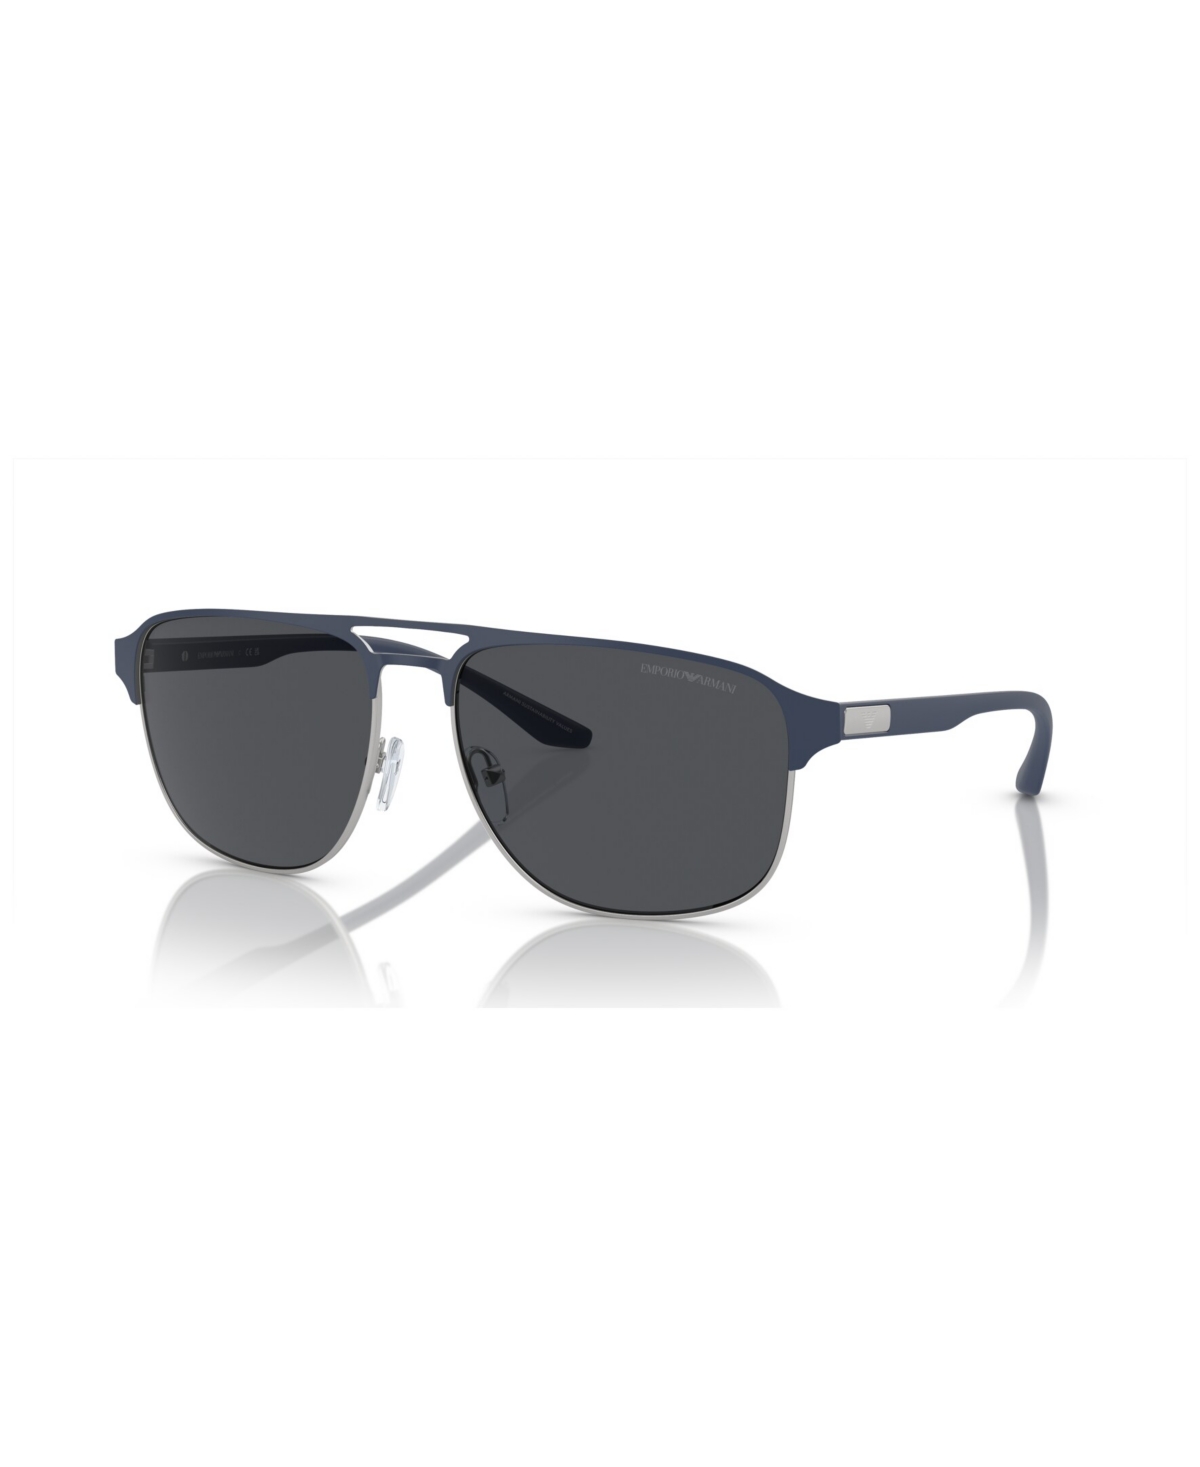 Emporio Armani Men's Sunglasses Ea2144 In Matte Silver,bluette